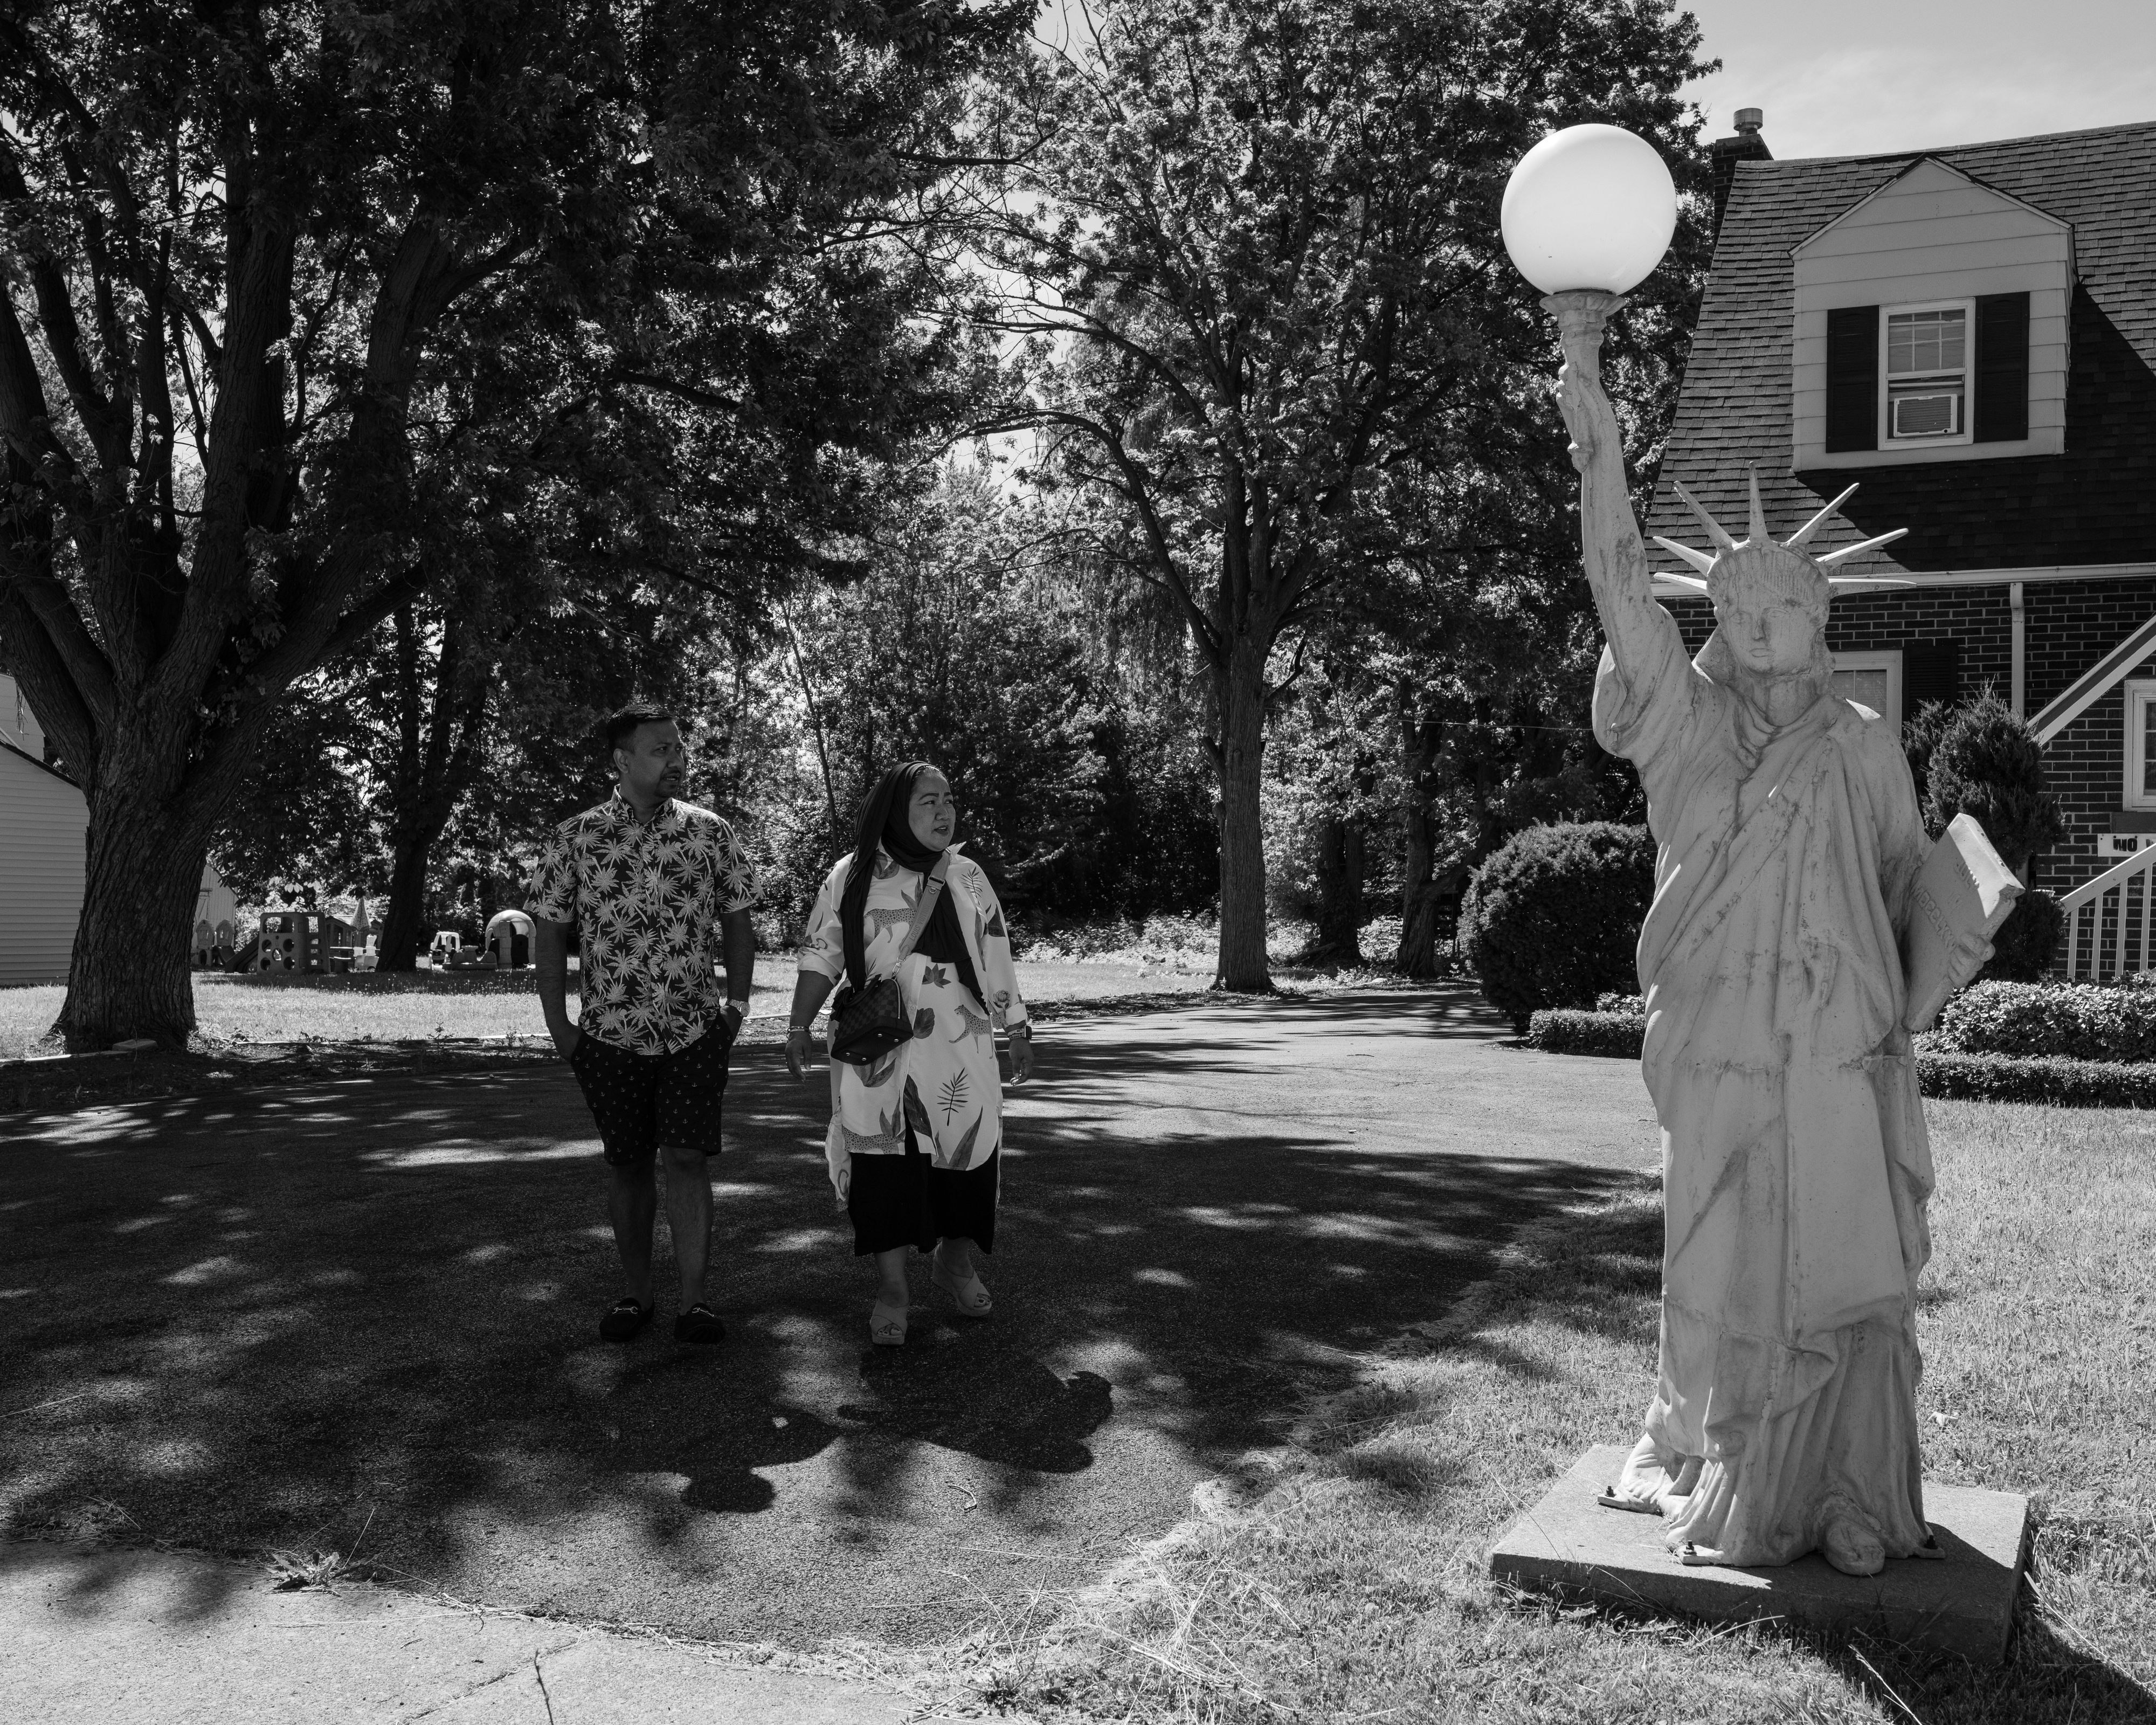 Un homme et une femme se tiennent sur une pelouse à côté d'une petite réplique de la Statue de la Liberté.